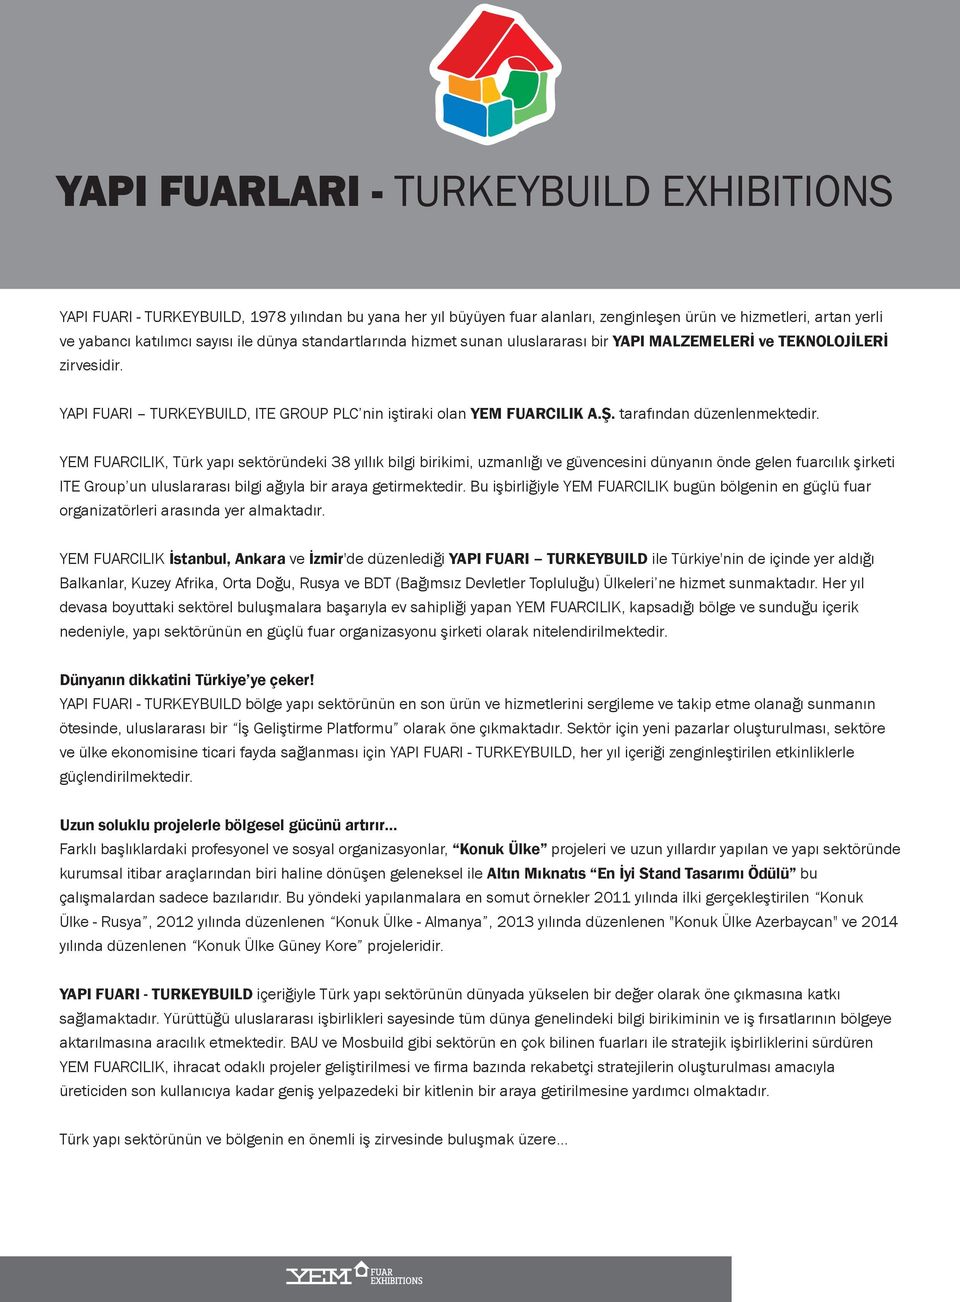 YEM FUARCILIK, Türk yapı sektöründeki 38 yıllık bilgi birikimi, uzmanlığı ve güvenesini dünyanın önde gelen fuarılık şirketi ITE Group un uluslararası bilgi ağıyla bir araya getirmektedir.